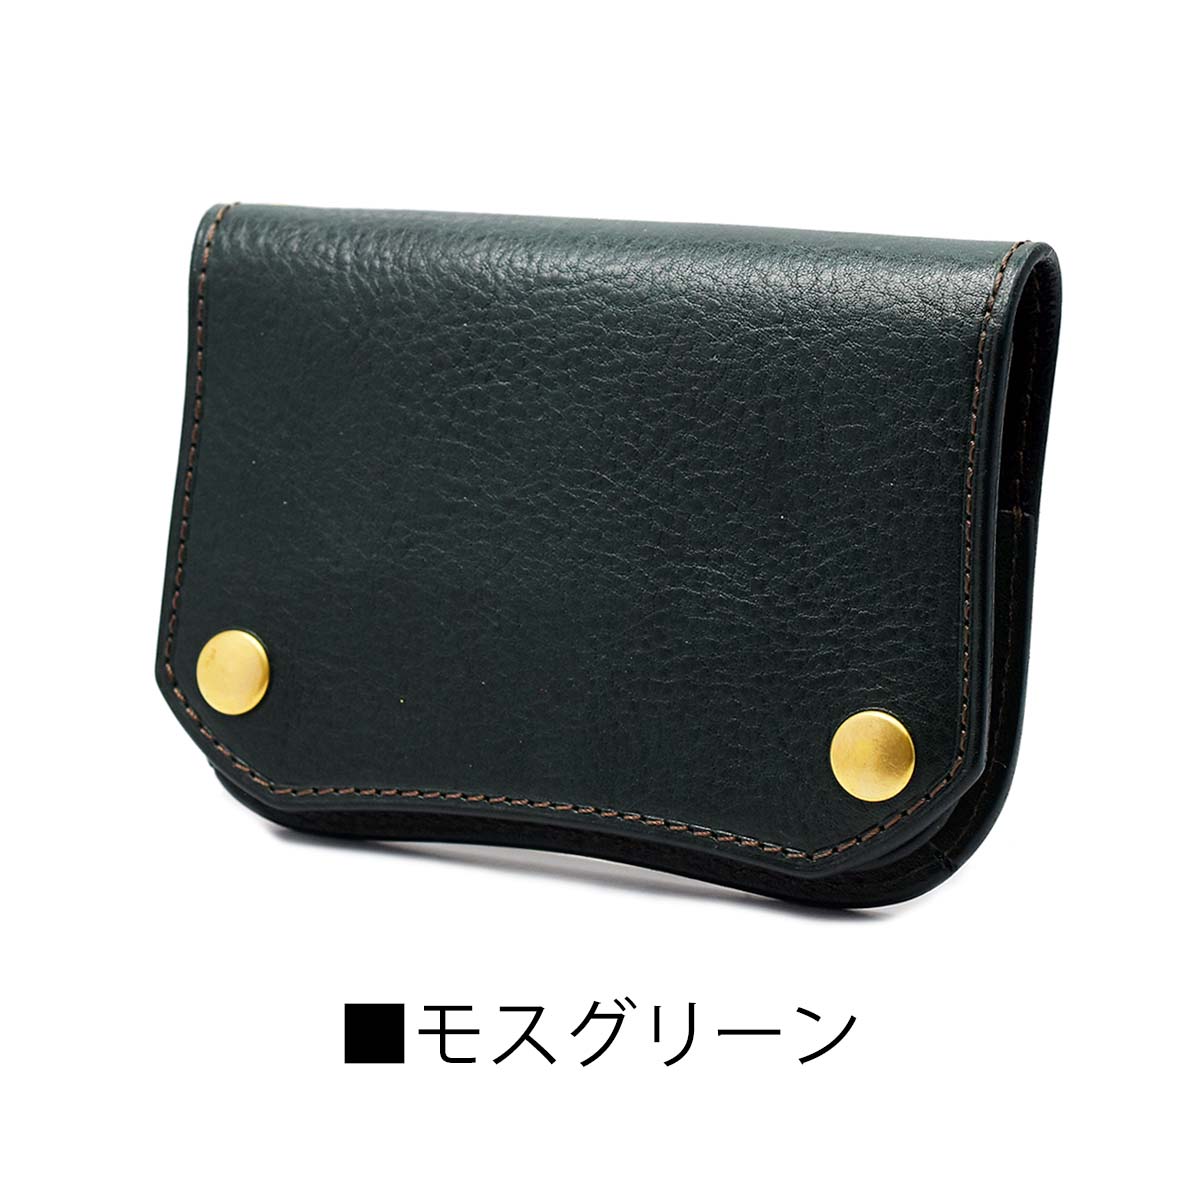 ショートトラッカーウォレット イタリアンレザー グルーバーレザー 日本製 本革 二つ折り財布 ミニ財布 Groover Leather GTS-100  ミニウォレット :gl-gts-100:CHAOS accessory 通販 